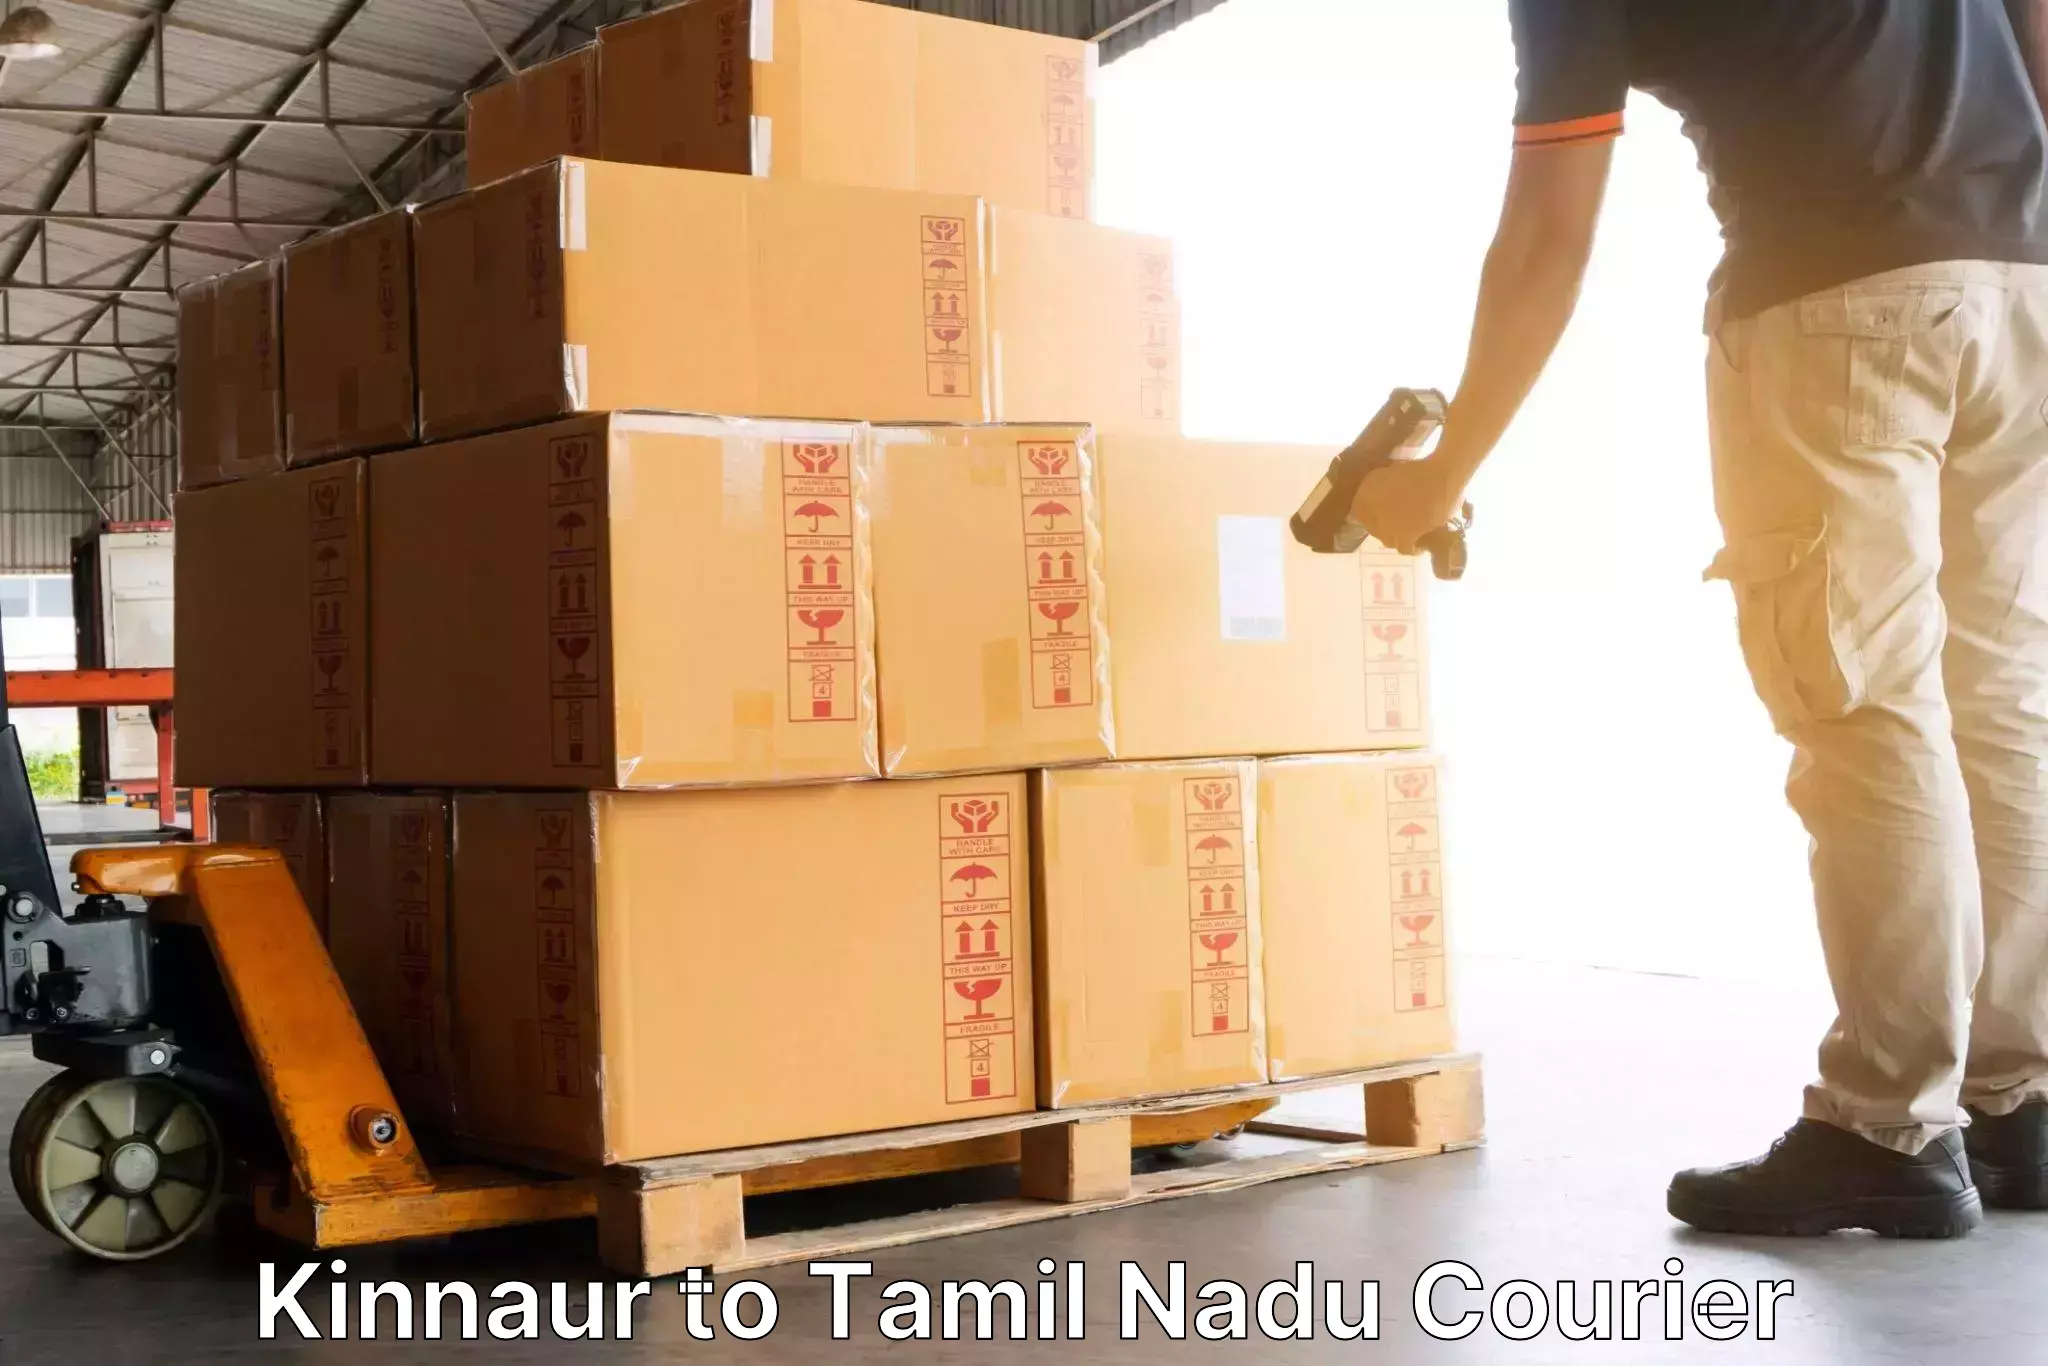 Speedy delivery service Kinnaur to Tamil Nadu